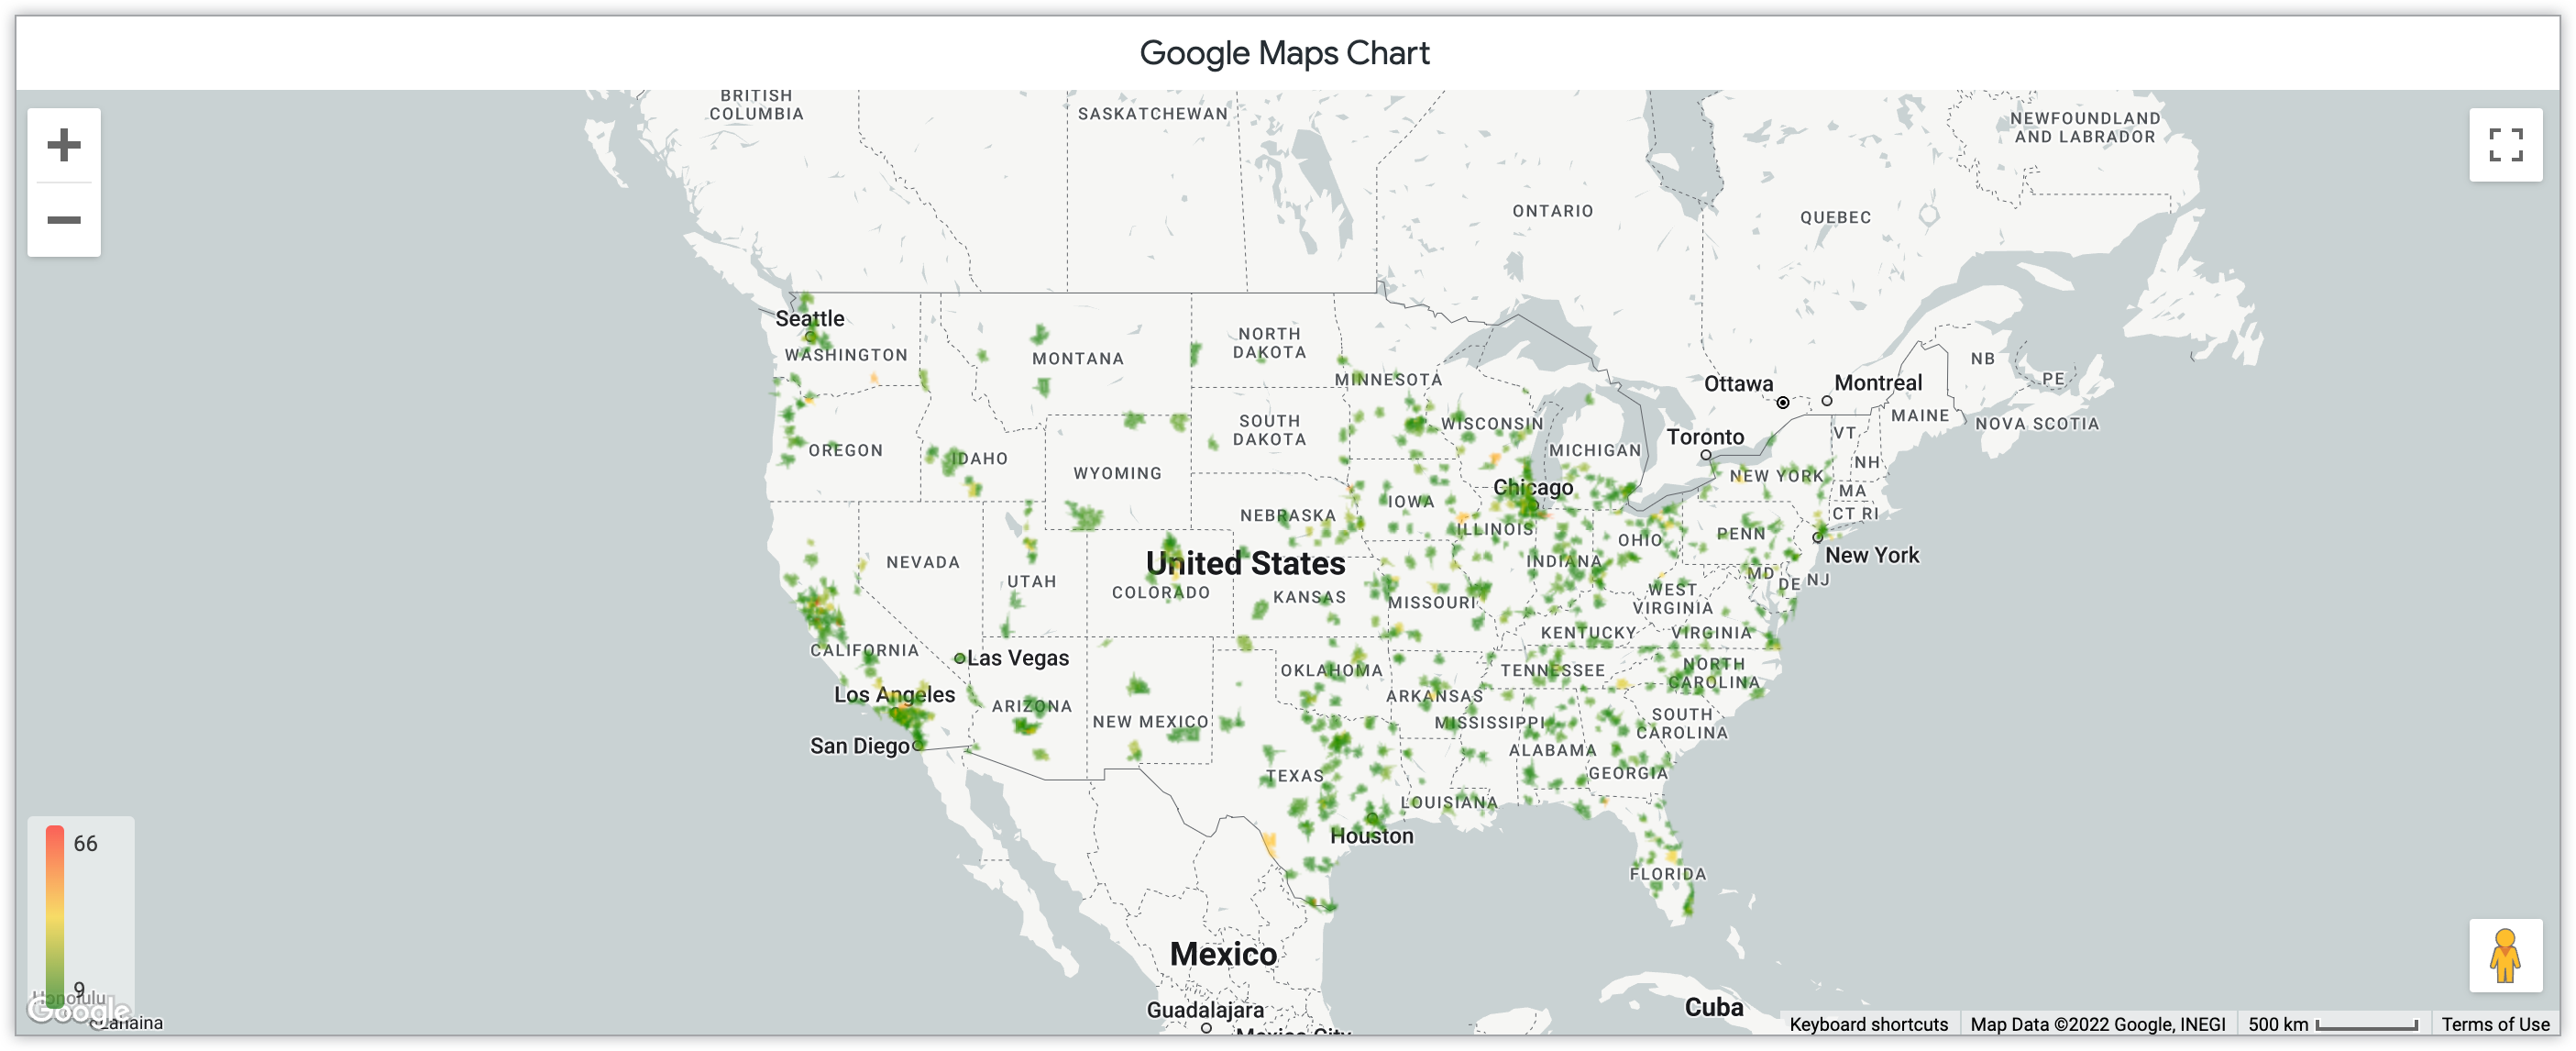 米国の郵便番号別に月ごとに販売された商品の量を示す Google マップのグラフ。